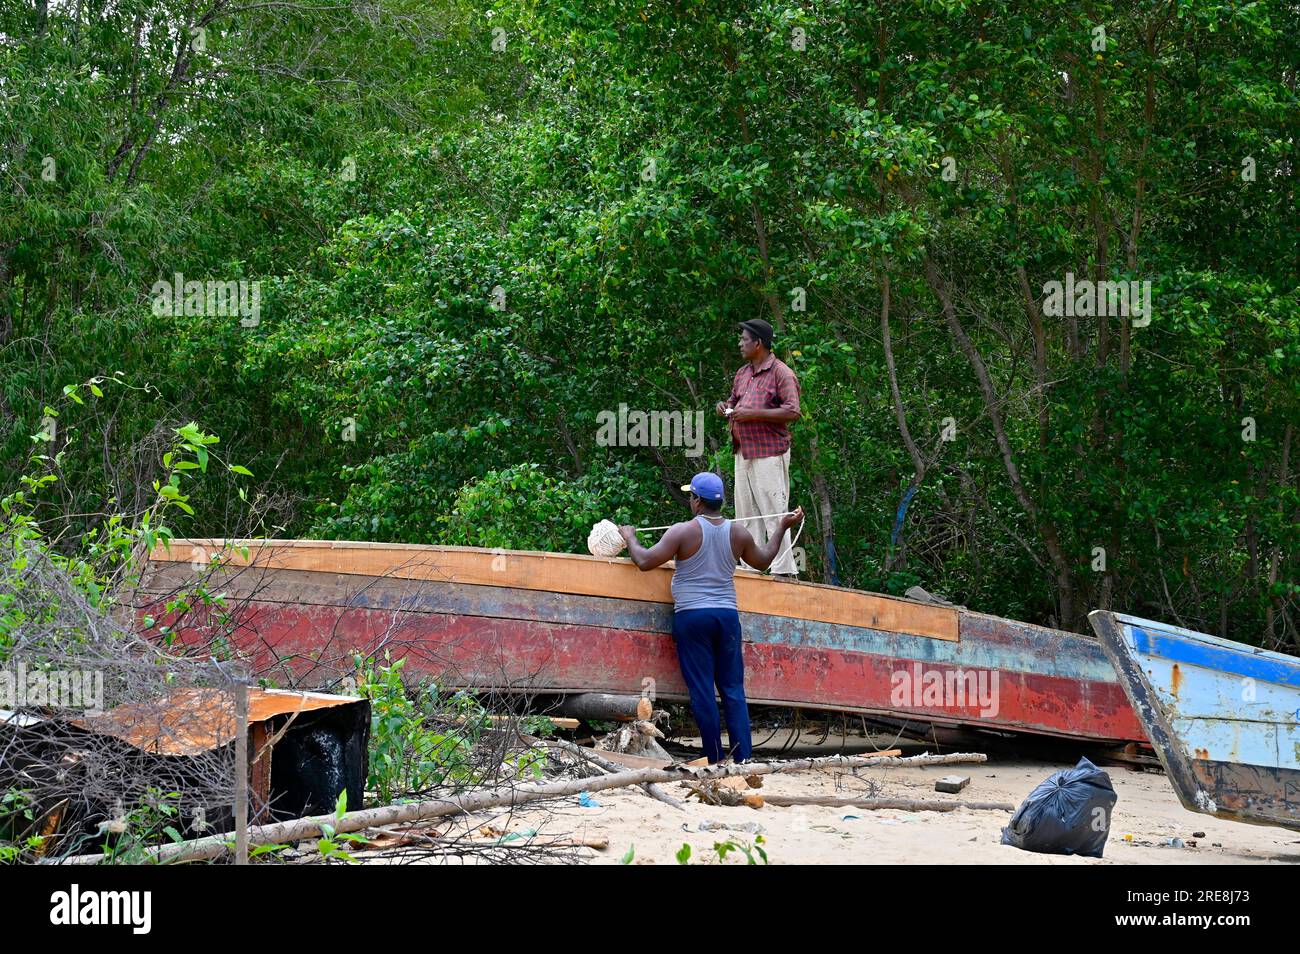 Près d'une rivière et entouré de verdure deux charpentiers du village de Ponoma au Suriname renouvellent le fond d'un bateau en bois Banque D'Images